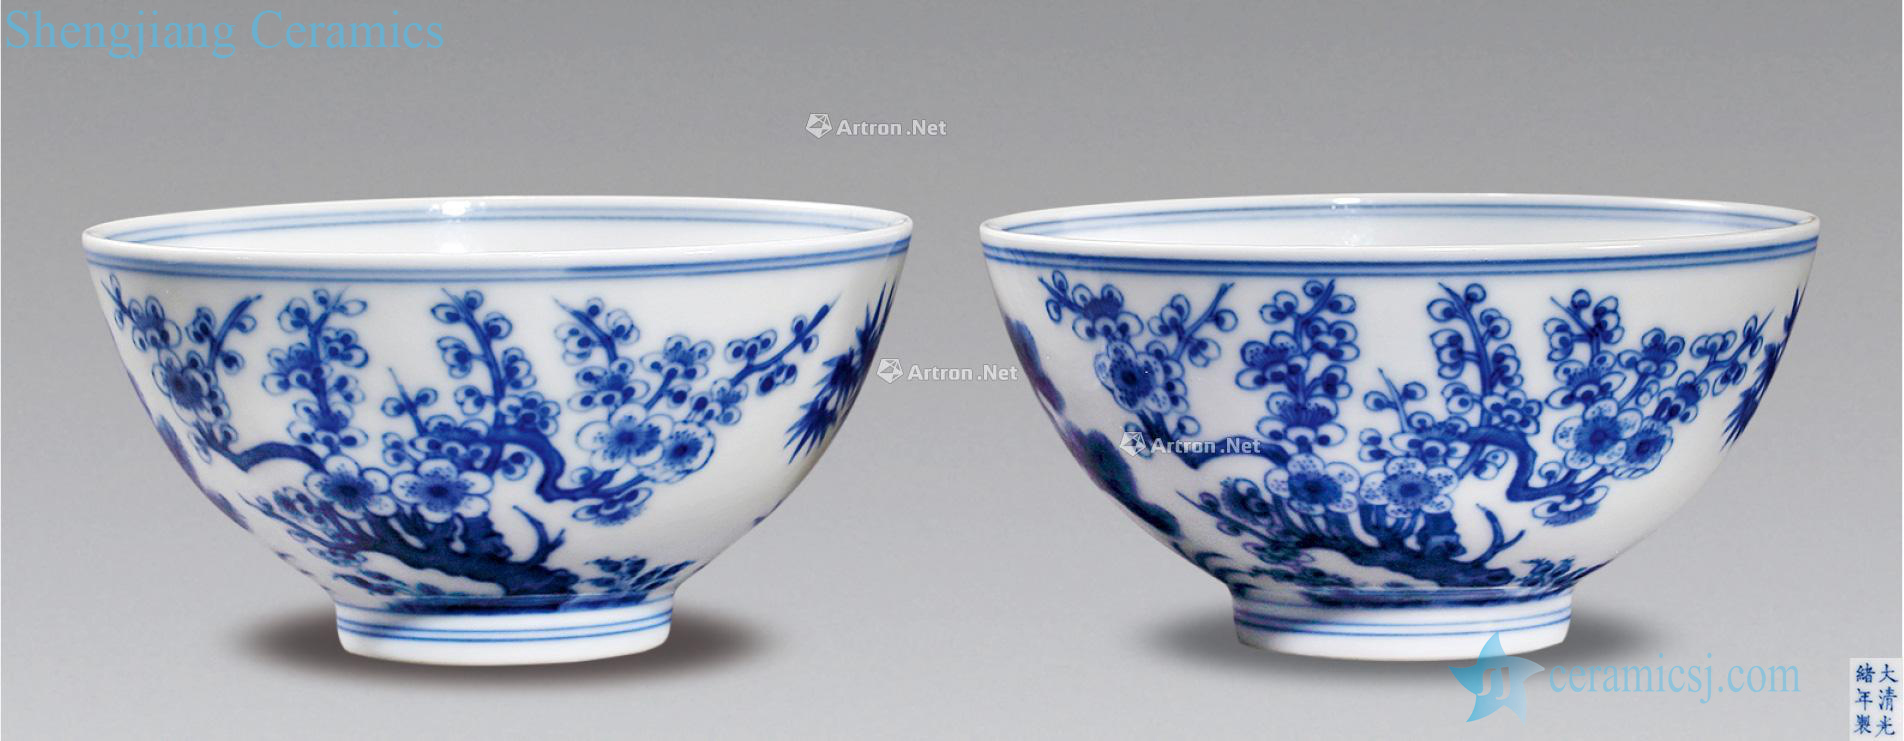 Qing guangxu Blue and white shochiku MeiWen bowl (a)